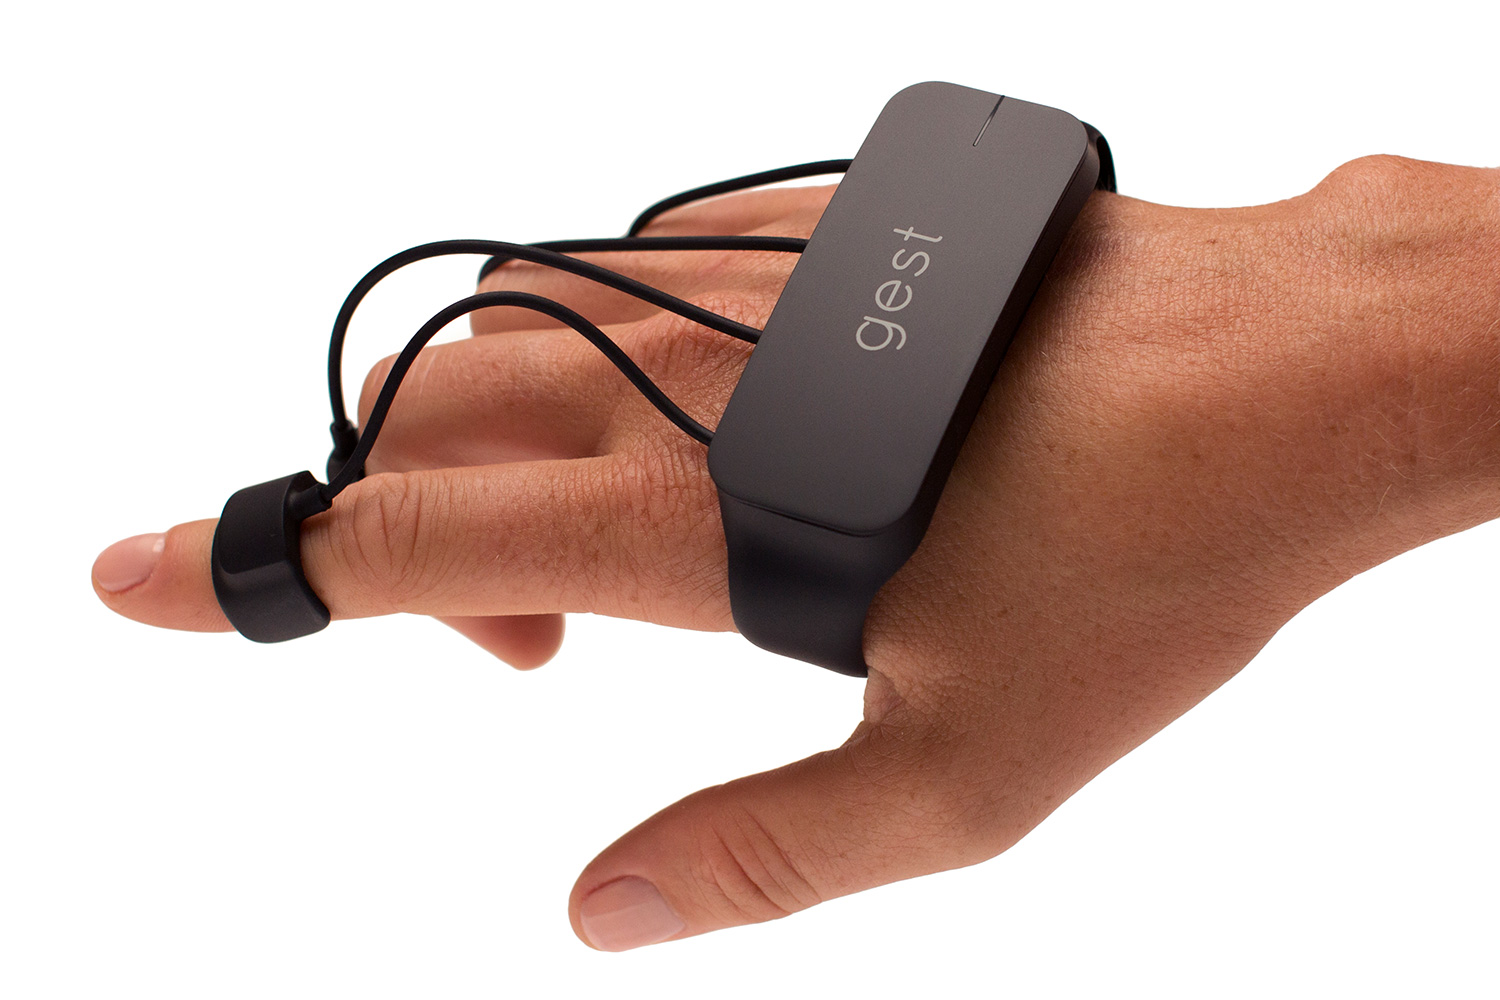 gest gesture sensing glove kickstarter black point